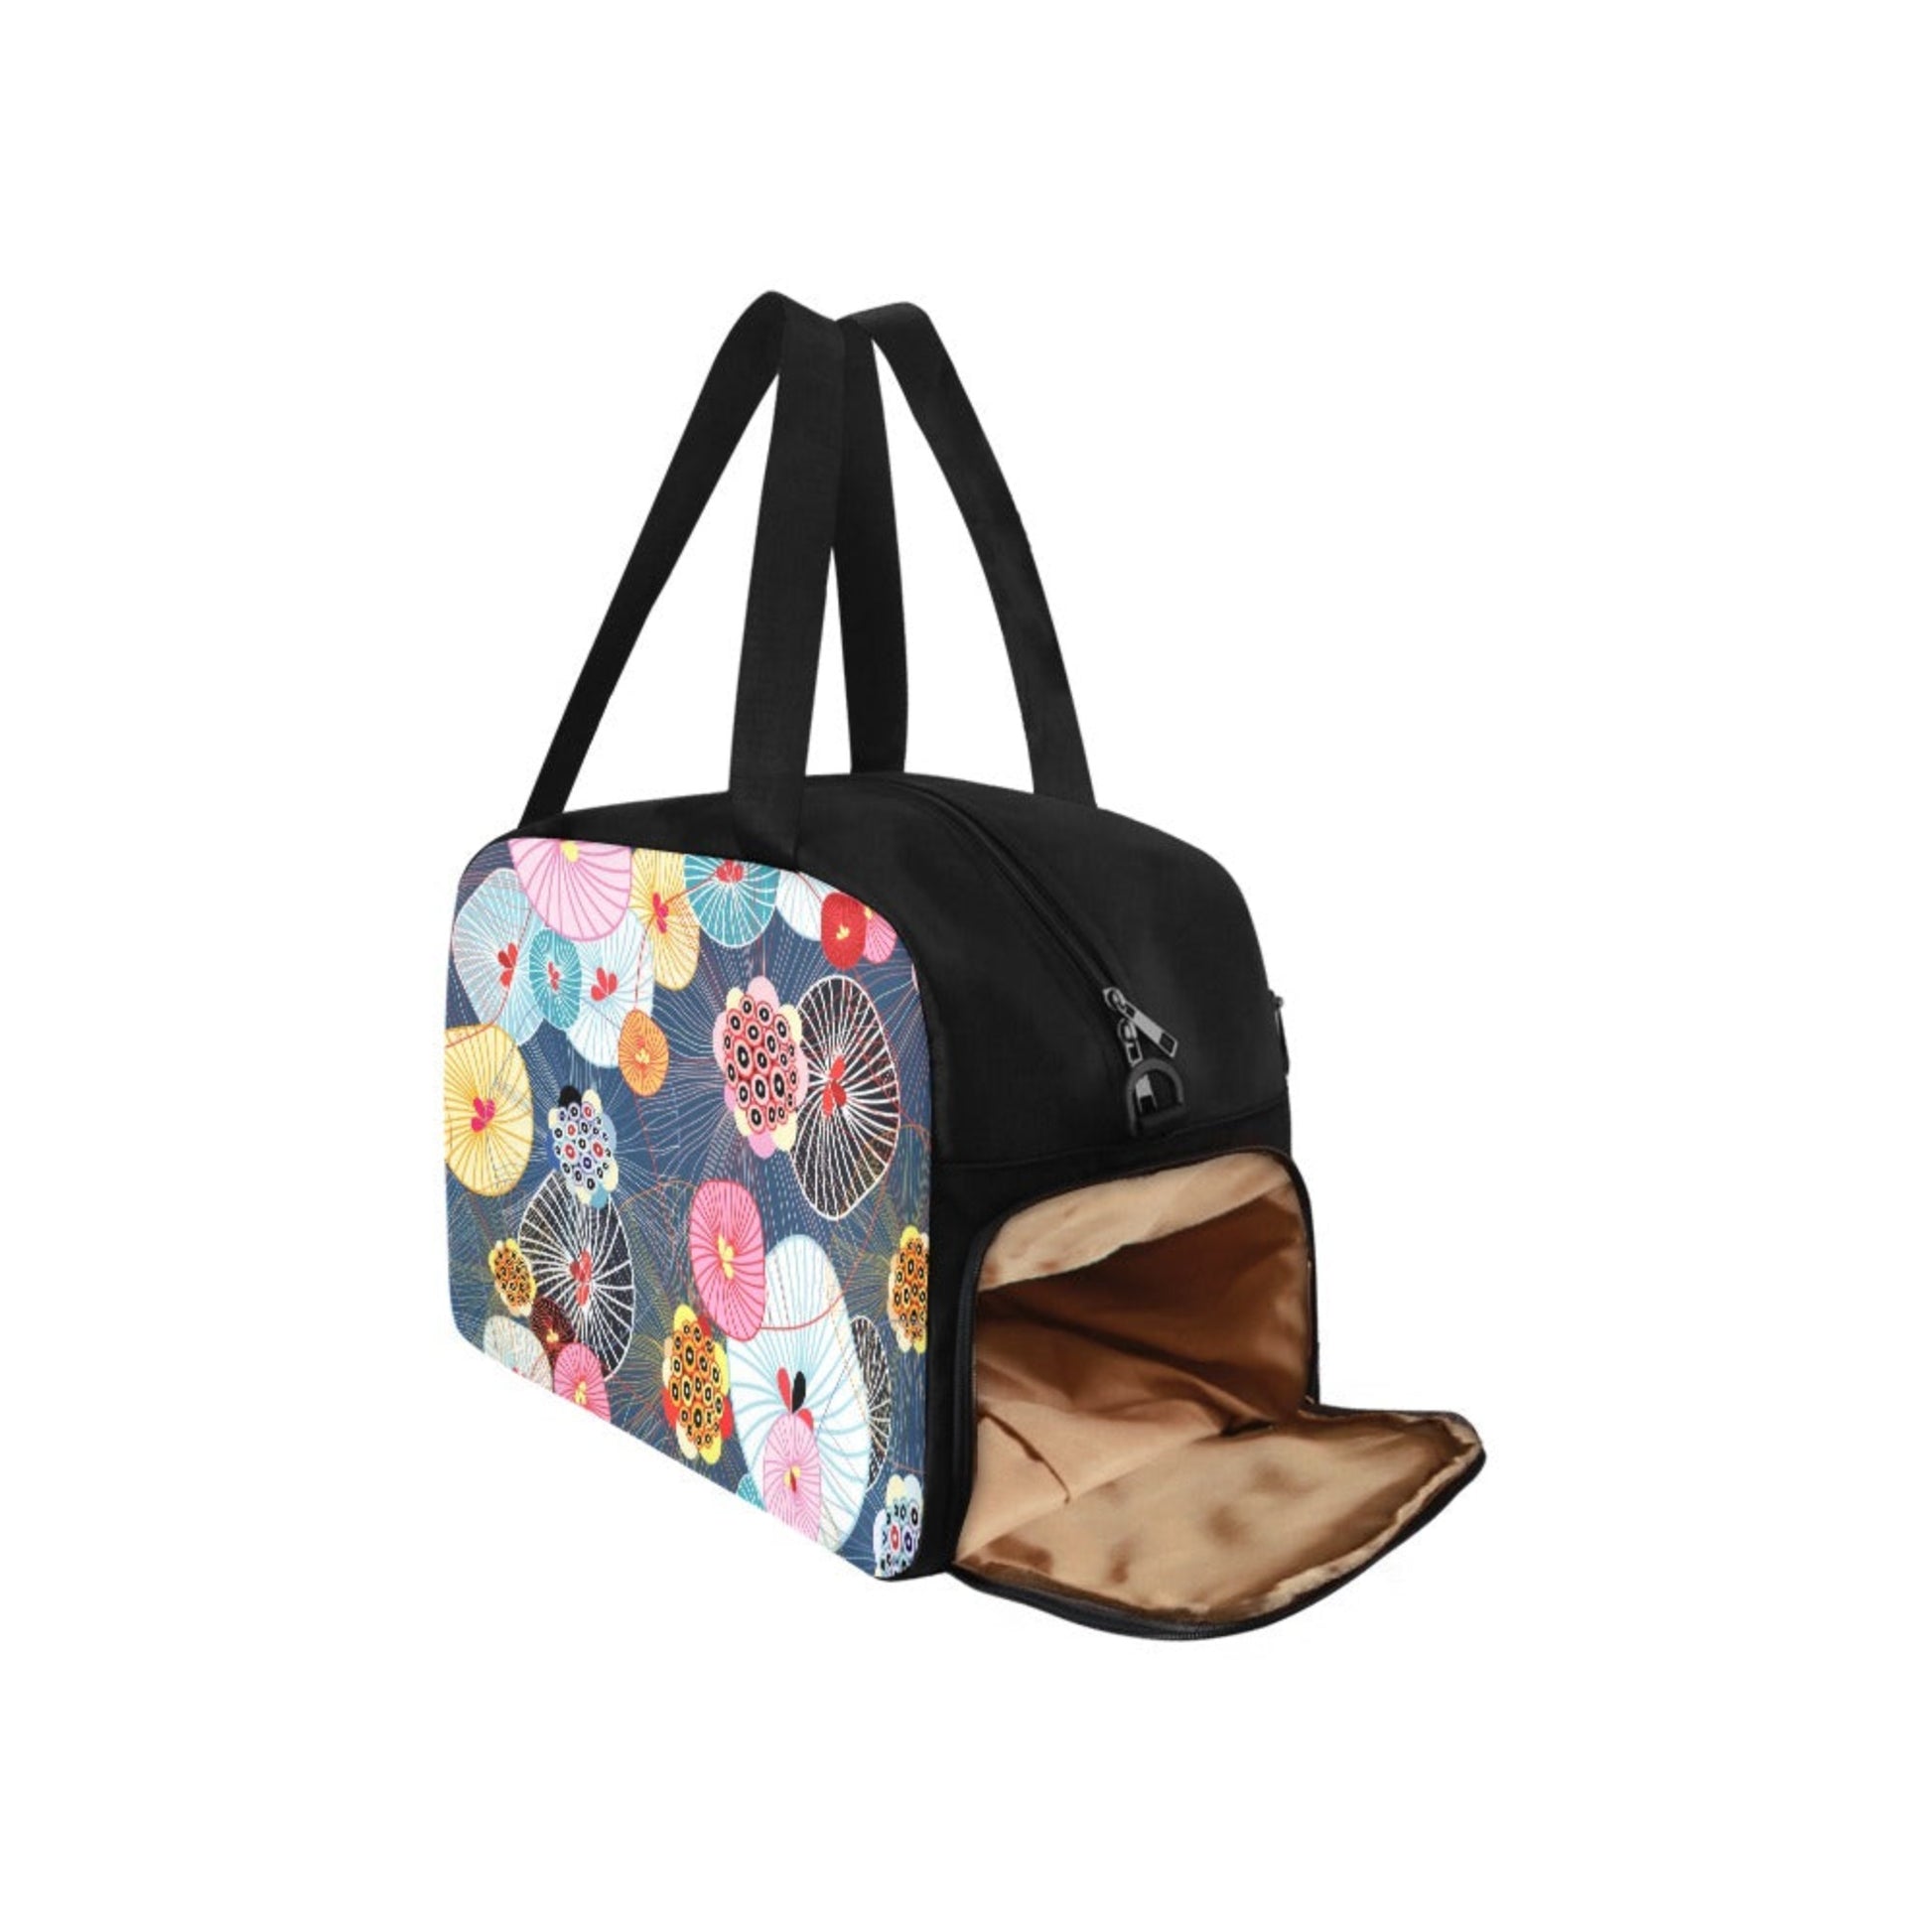 Abstract Floral - Gym Bag Gym Bag